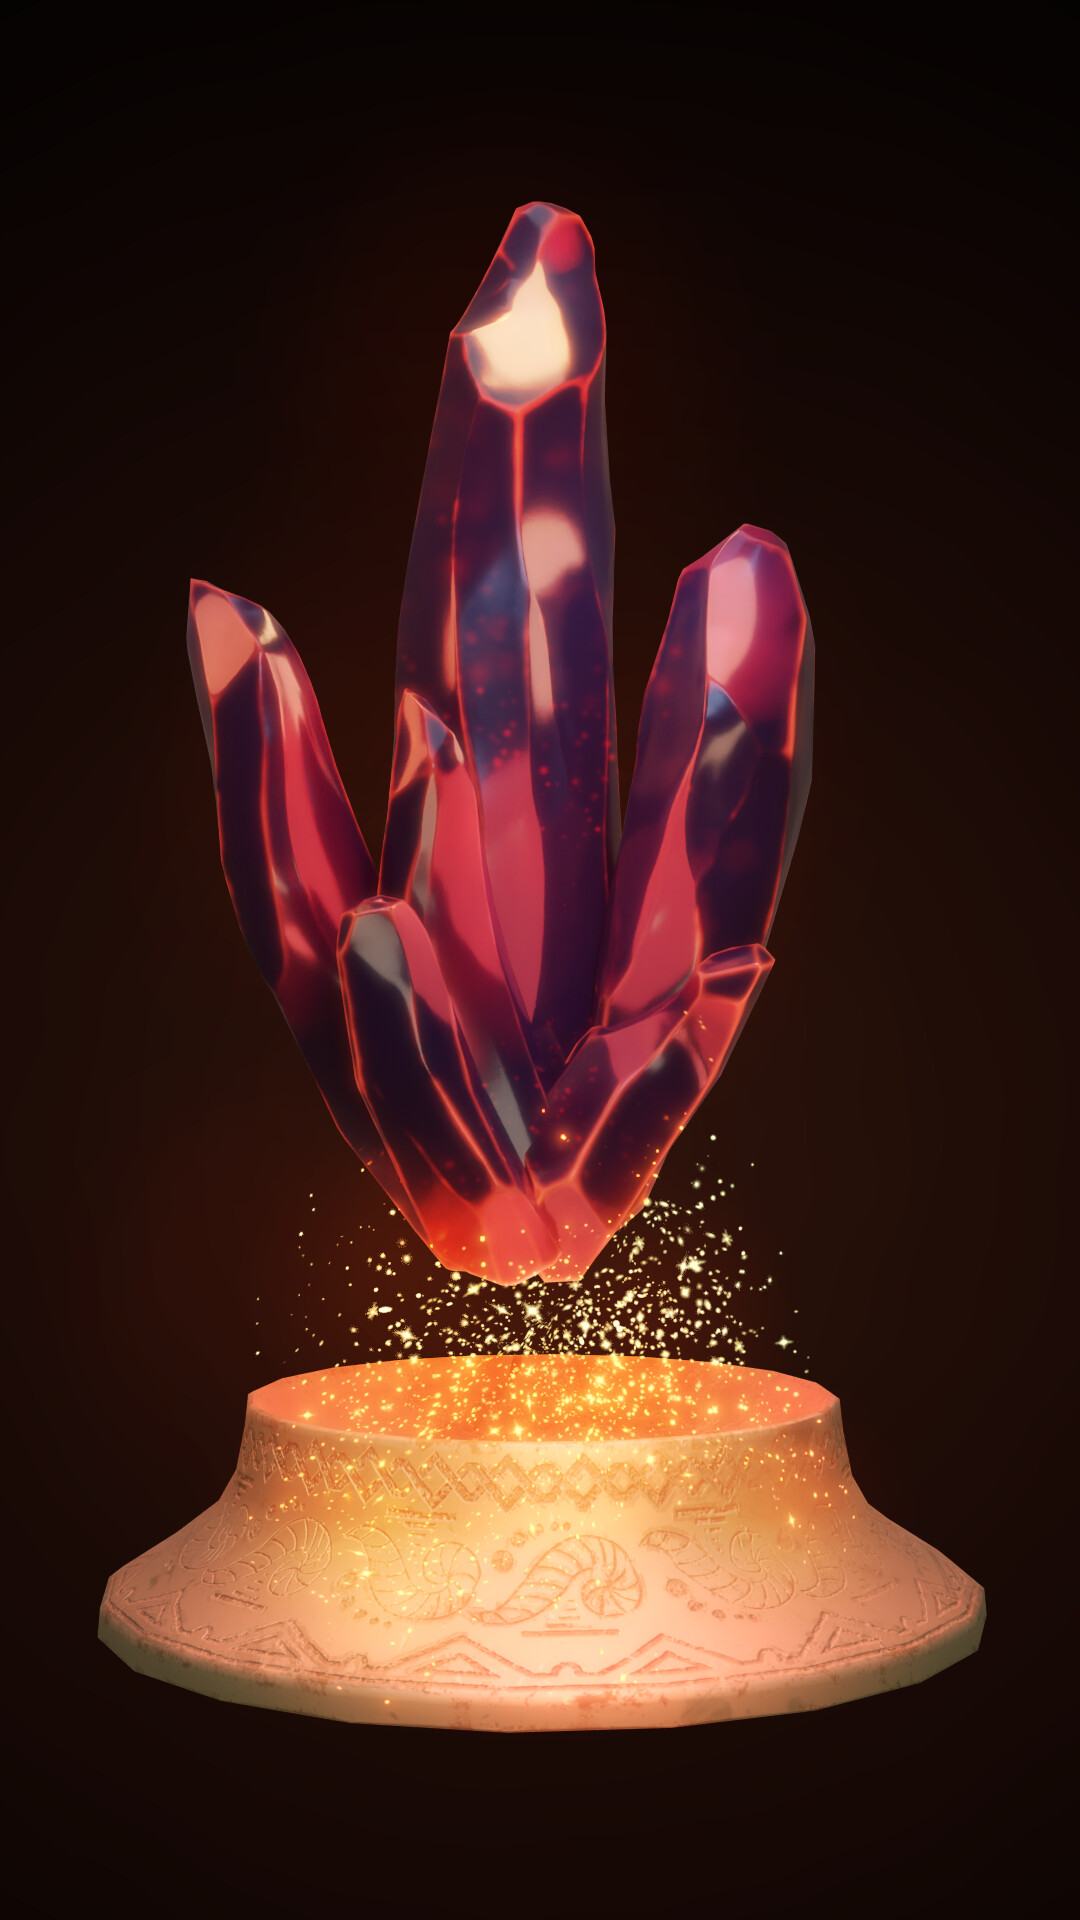 ArtStation - Conquering Ciros - Spells from Crystals